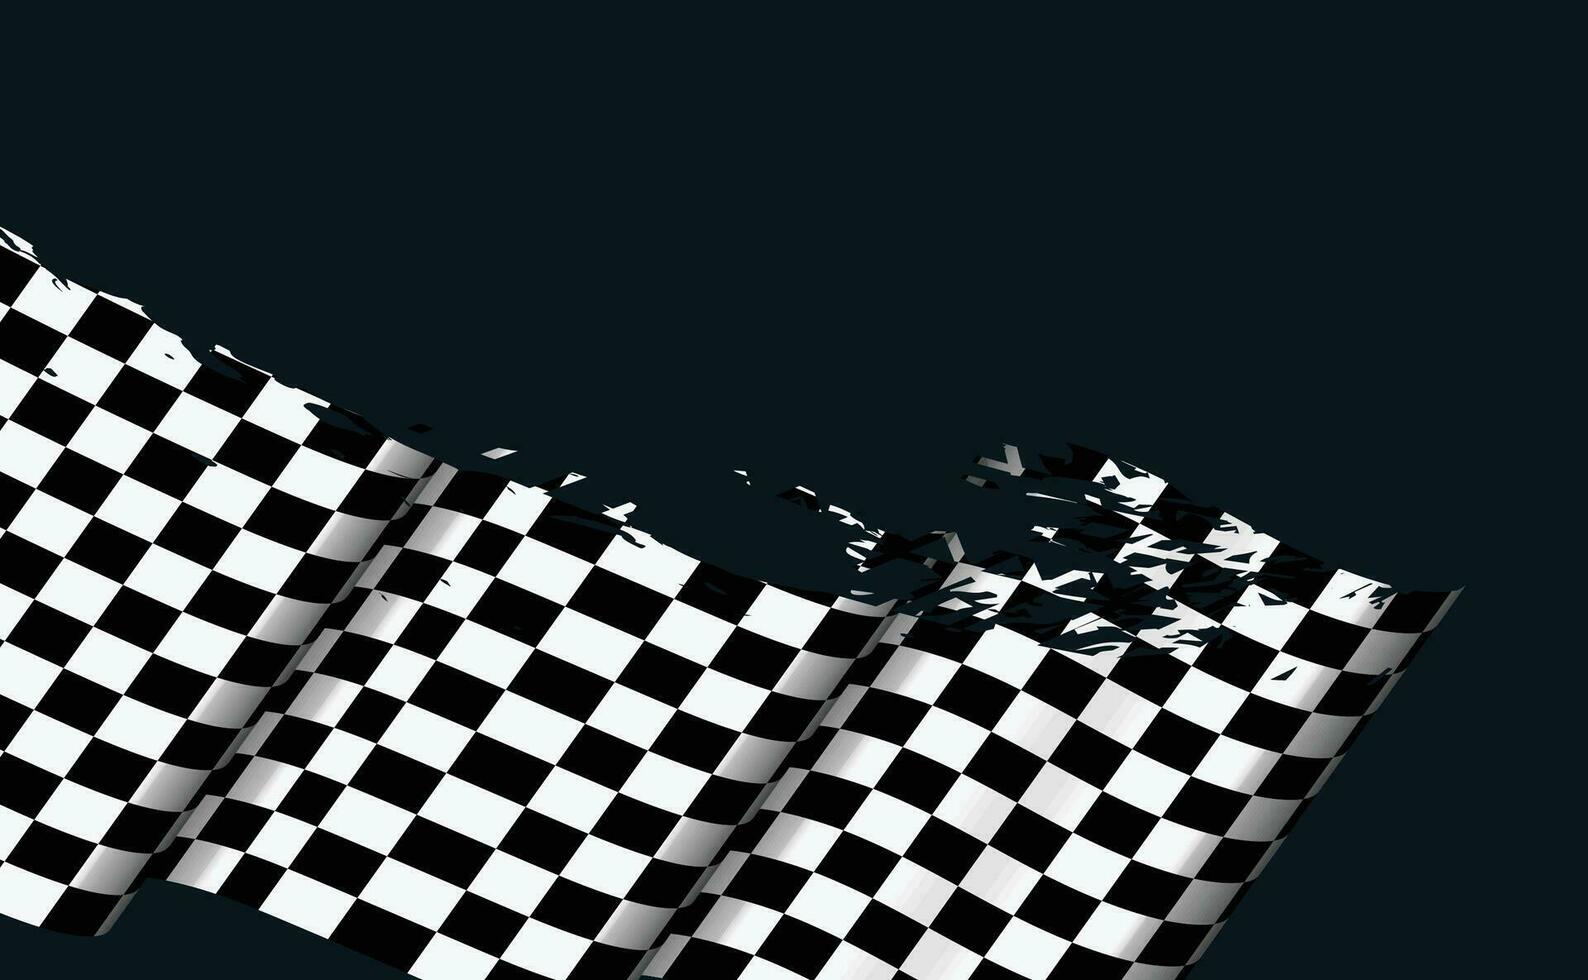 optisch Illusion Welle. Schach Wellen Tafel. abstrakt 3d schwarz und Weiß Illusionen. horizontal Linien Streifen Muster oder Hintergrund mit wellig Verzerrung Wirkung. Vektor Illustration.